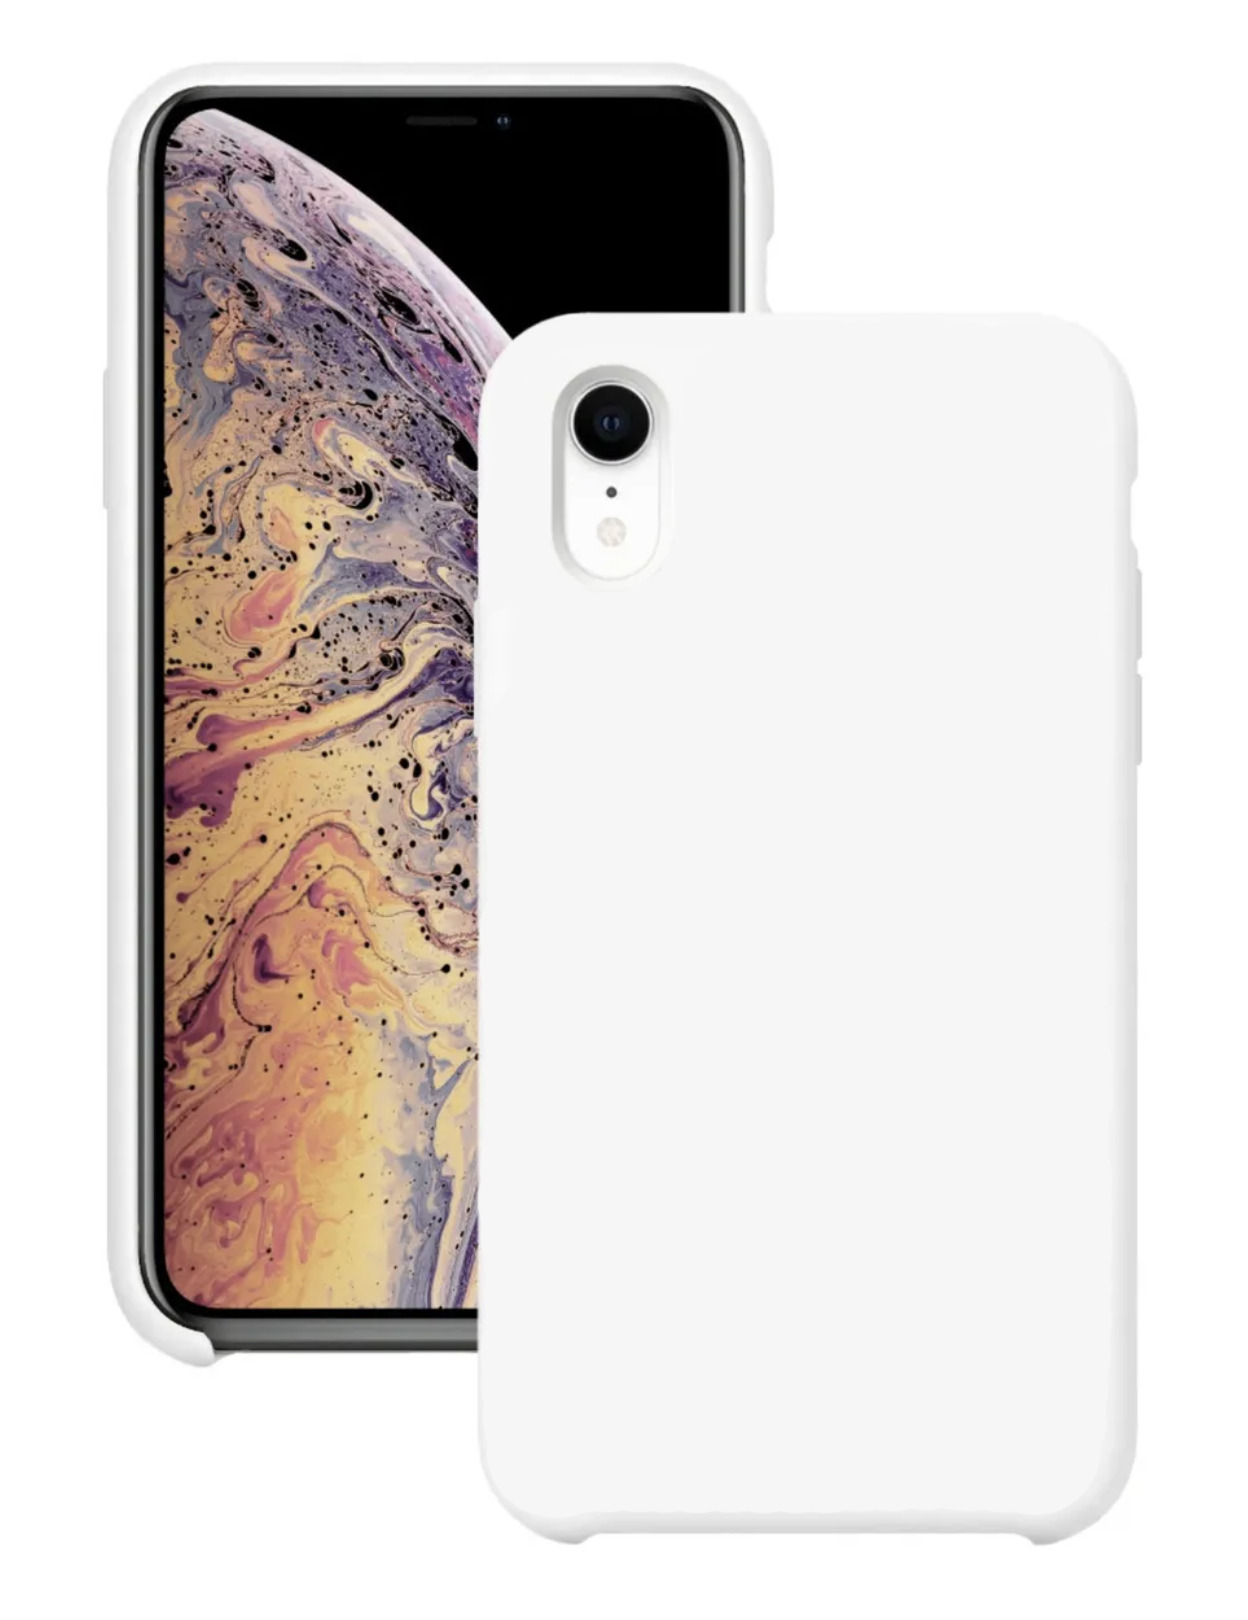 Чехол для Apple iPhone Xr Silicone Case (Белый)